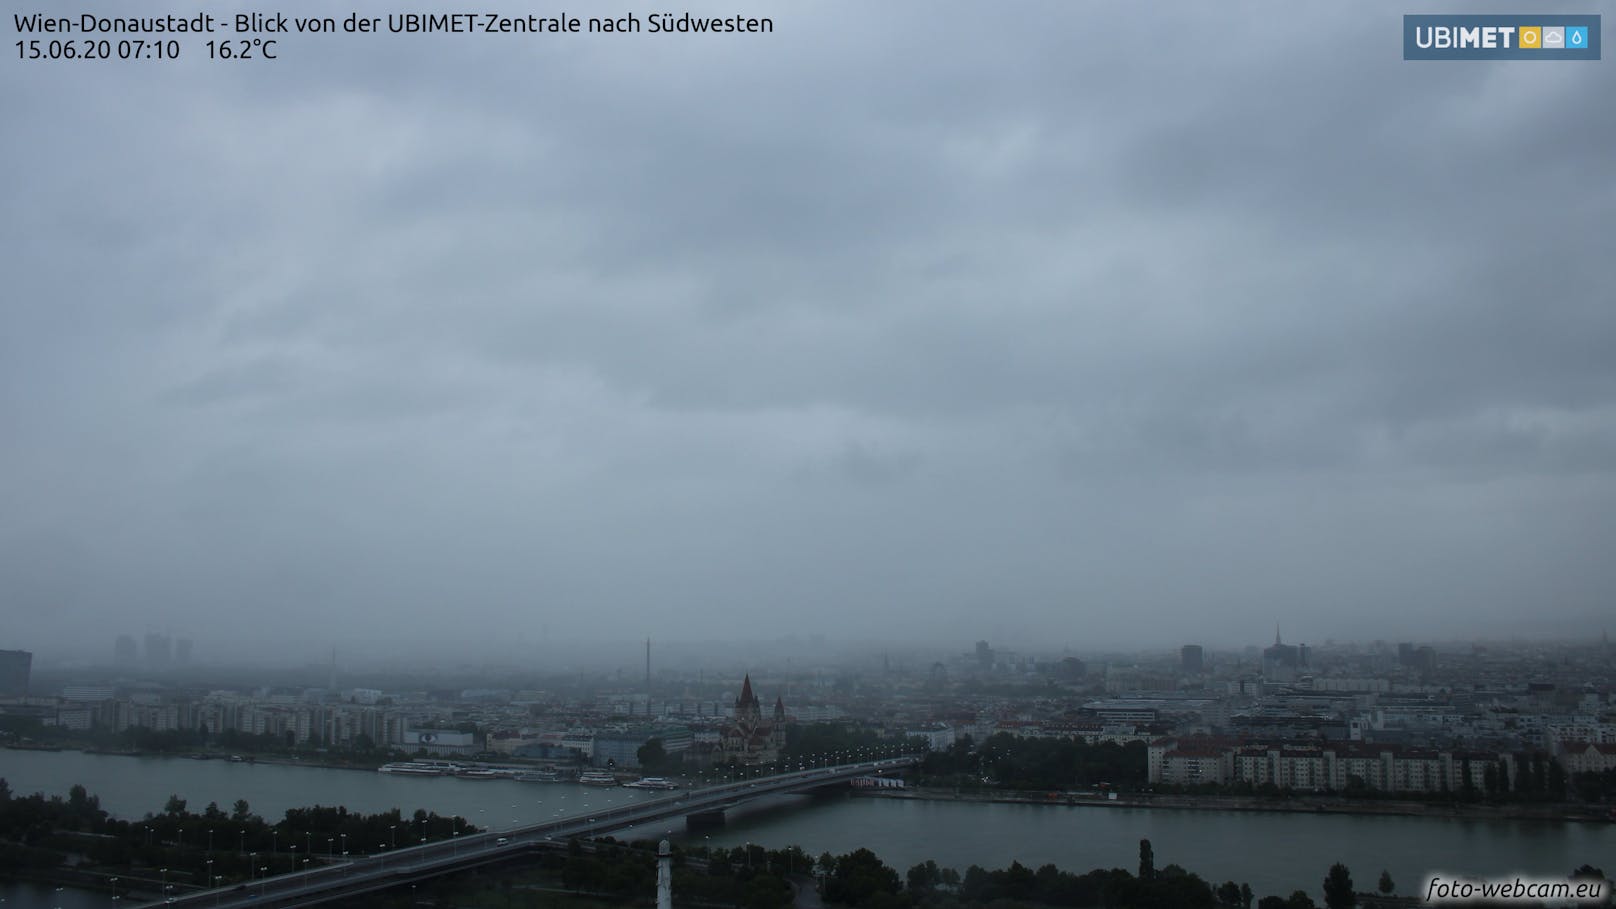 Regenwetter im Wien: Blick Richtung Südwesten aufgenommen von der UBIMET-Zentrale